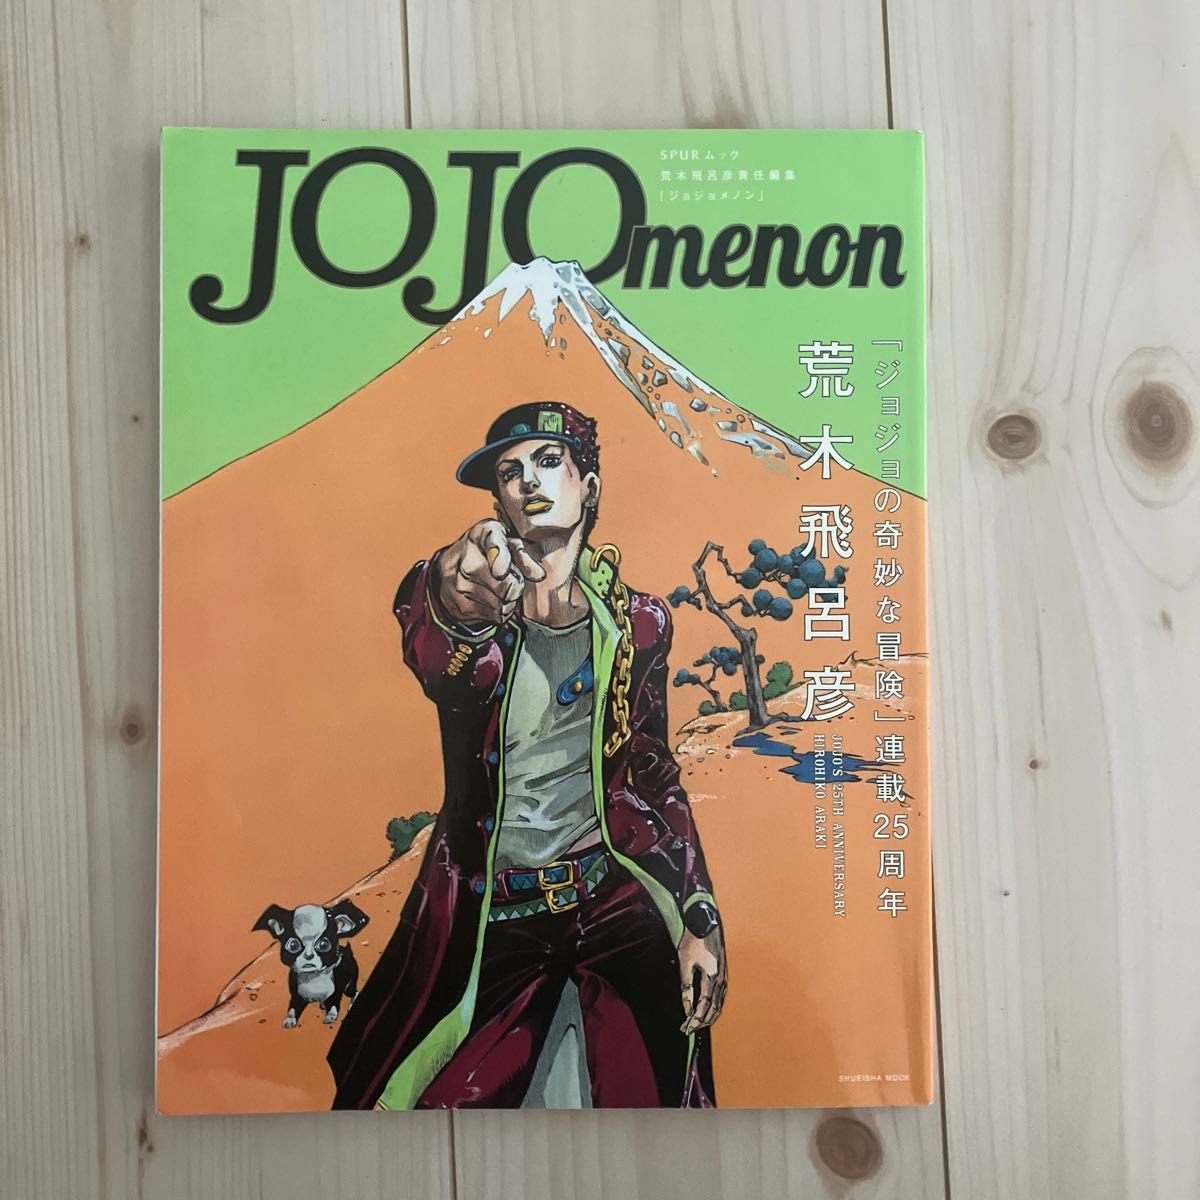 ジョジョの奇妙な冒険 1部 2部 3部全巻セット＋短編集、JOJOmenon